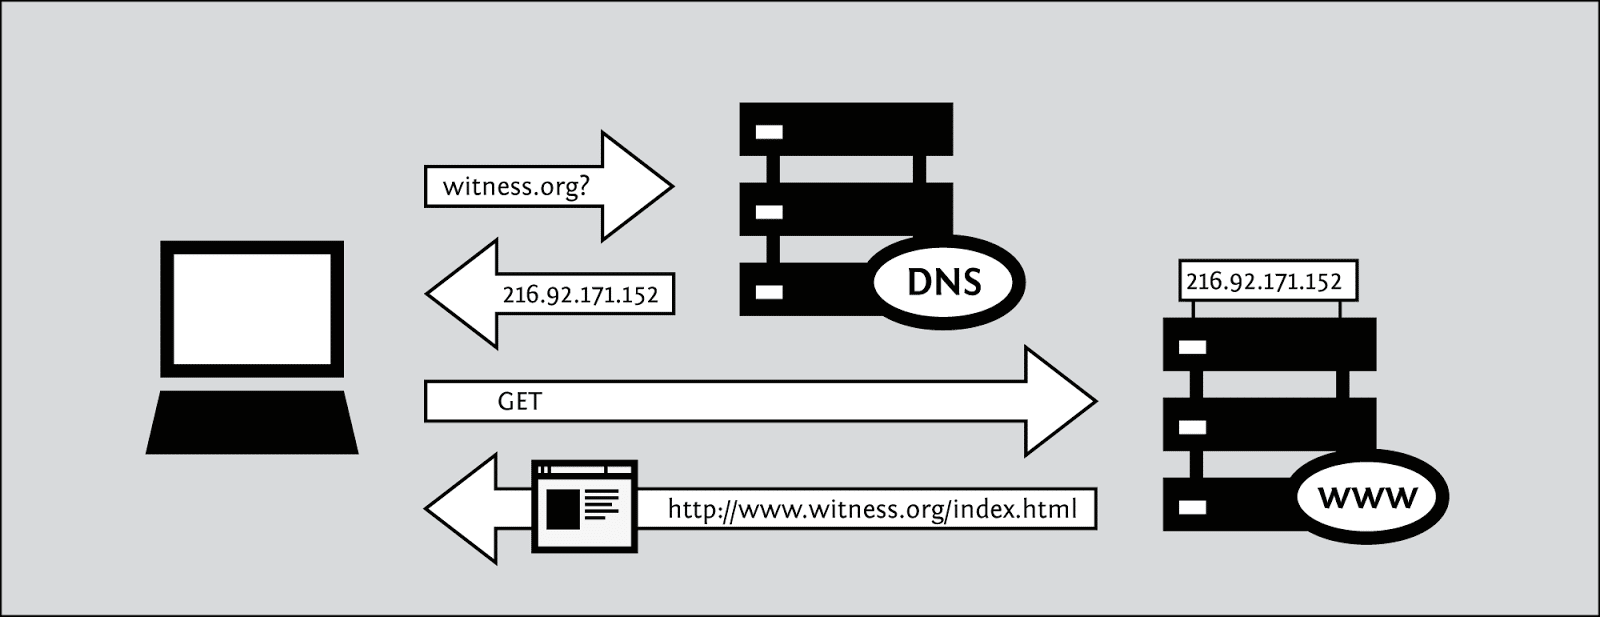 كيفية تغيير DNS الخاص بك في الويندوز والماك لعودة الإنترنت للعمل - شروحات